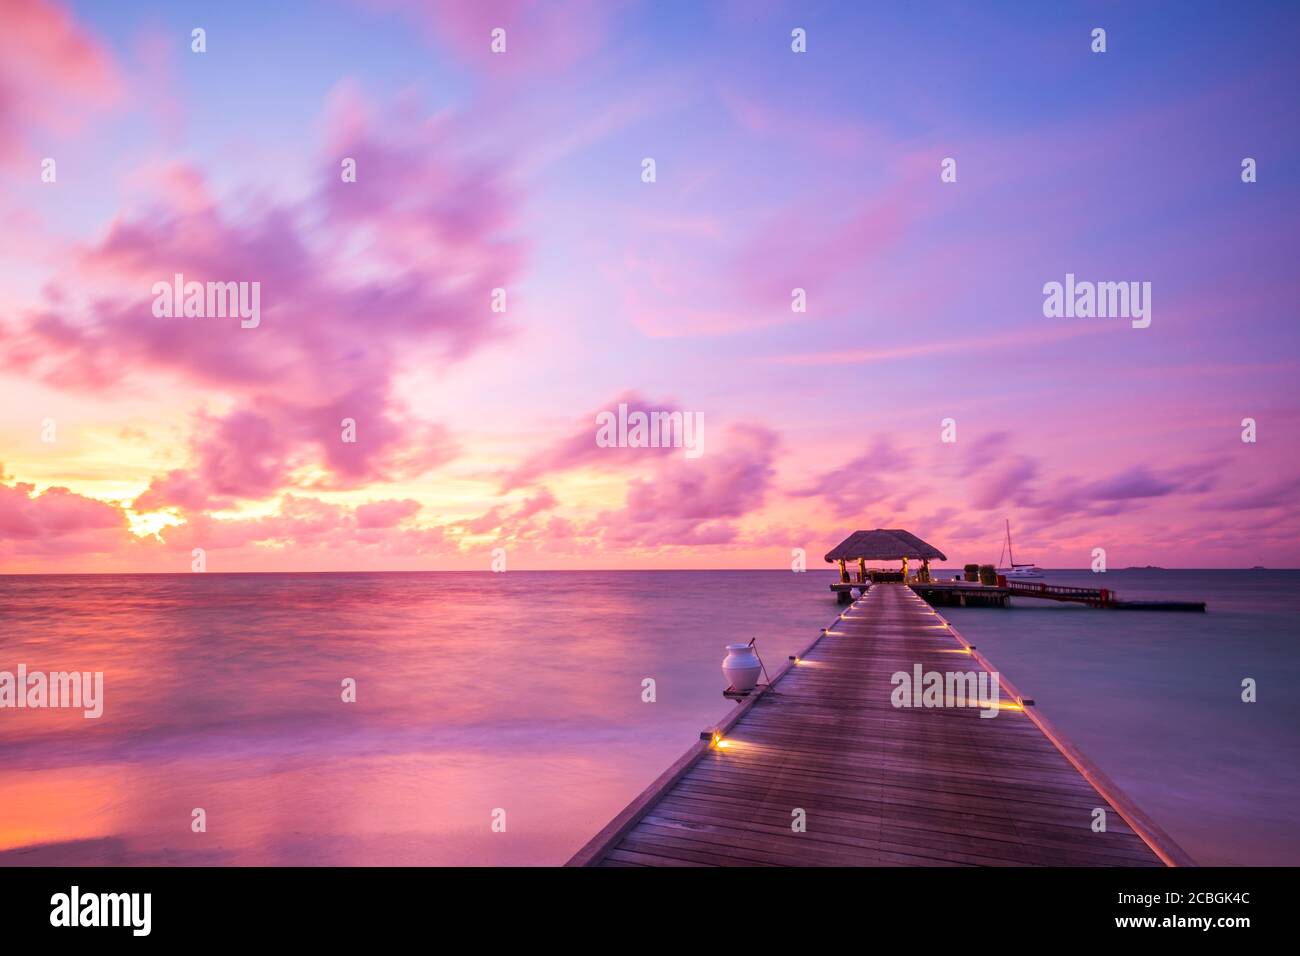 Coucher de soleil sur l'île des Maldives. Station balnéaire de bungalows d'eau à la plage des îles. Océan Indien, Maldives. Magnifique coucher de soleil, station de luxe et ciel coloré. Banque D'Images